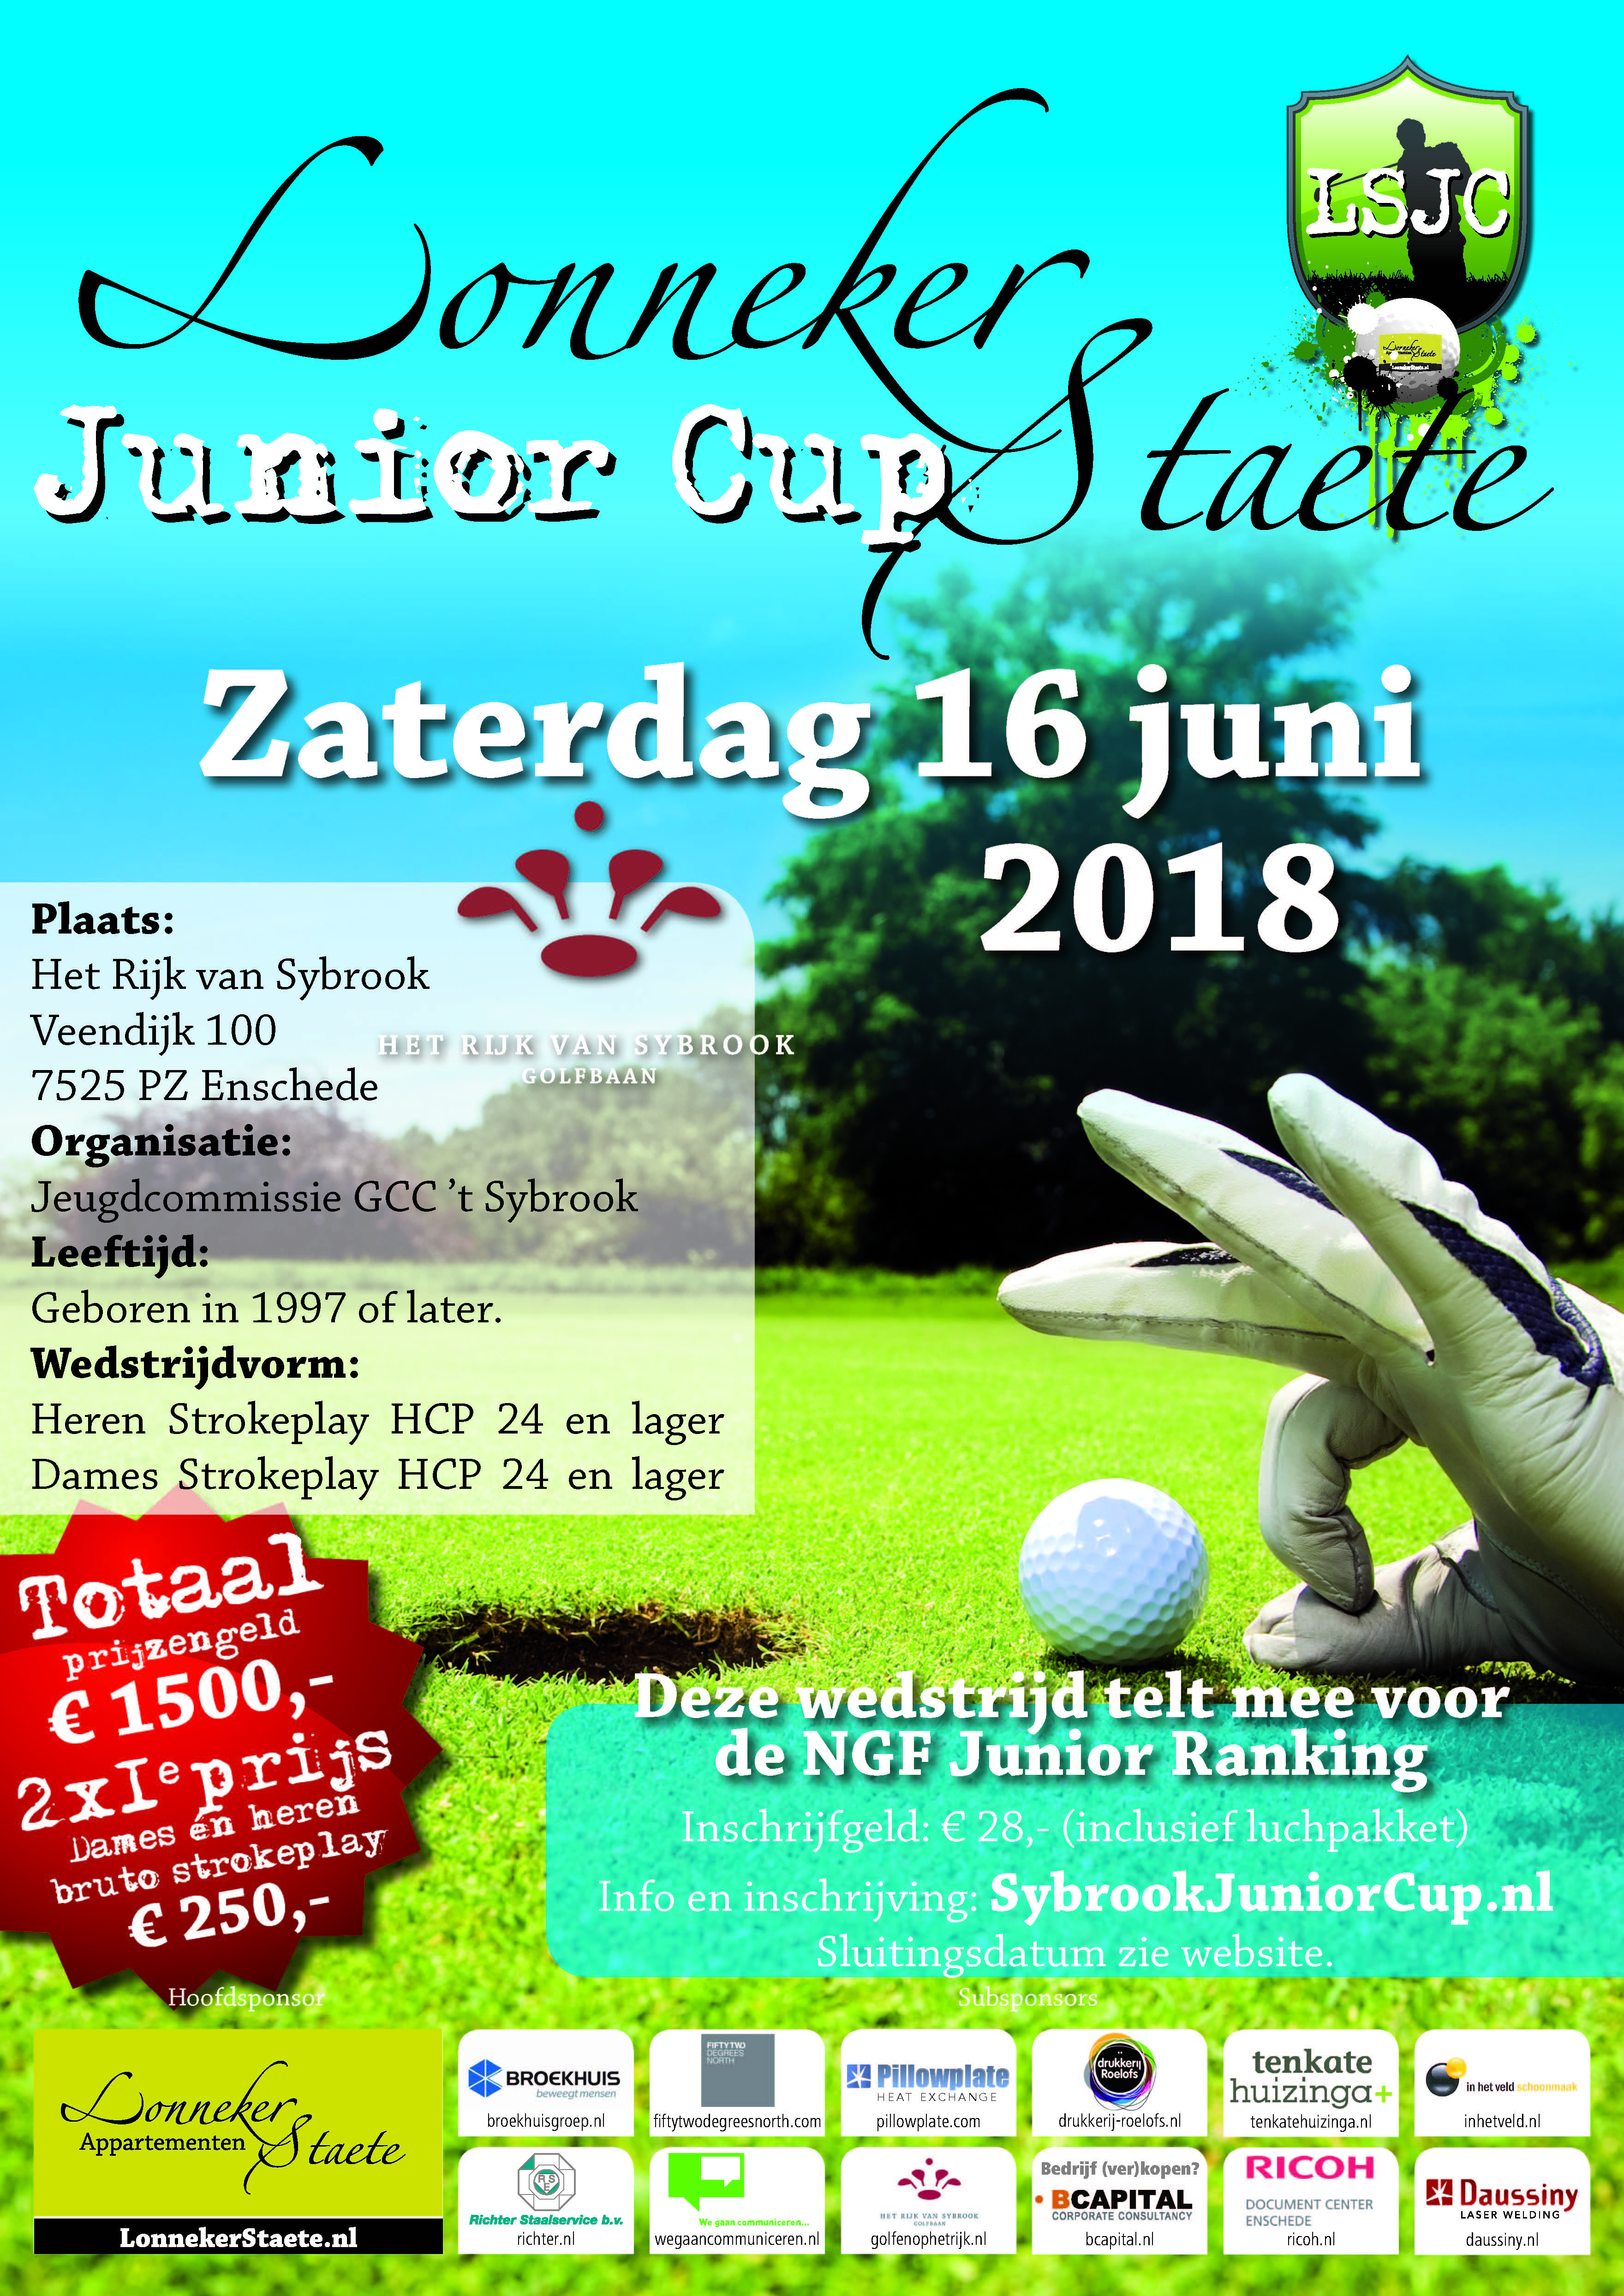 Zaterdag 16 juni aanstaande Lonneker Staete Junior Cup (LSJC) op golfbaan Het Rijk van Sybrook